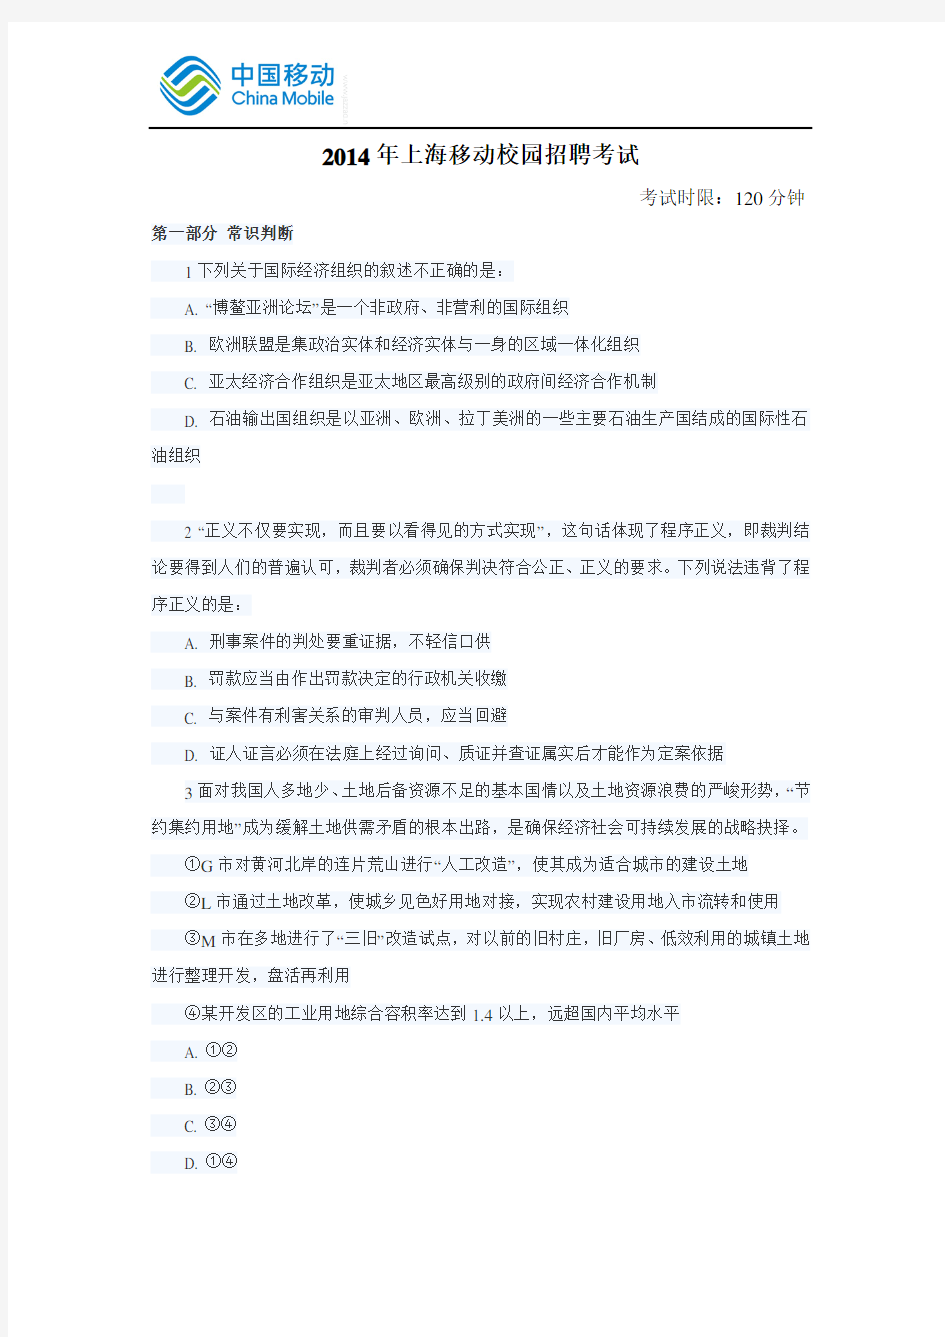 2014年上海移动笔试真题(校园招聘)